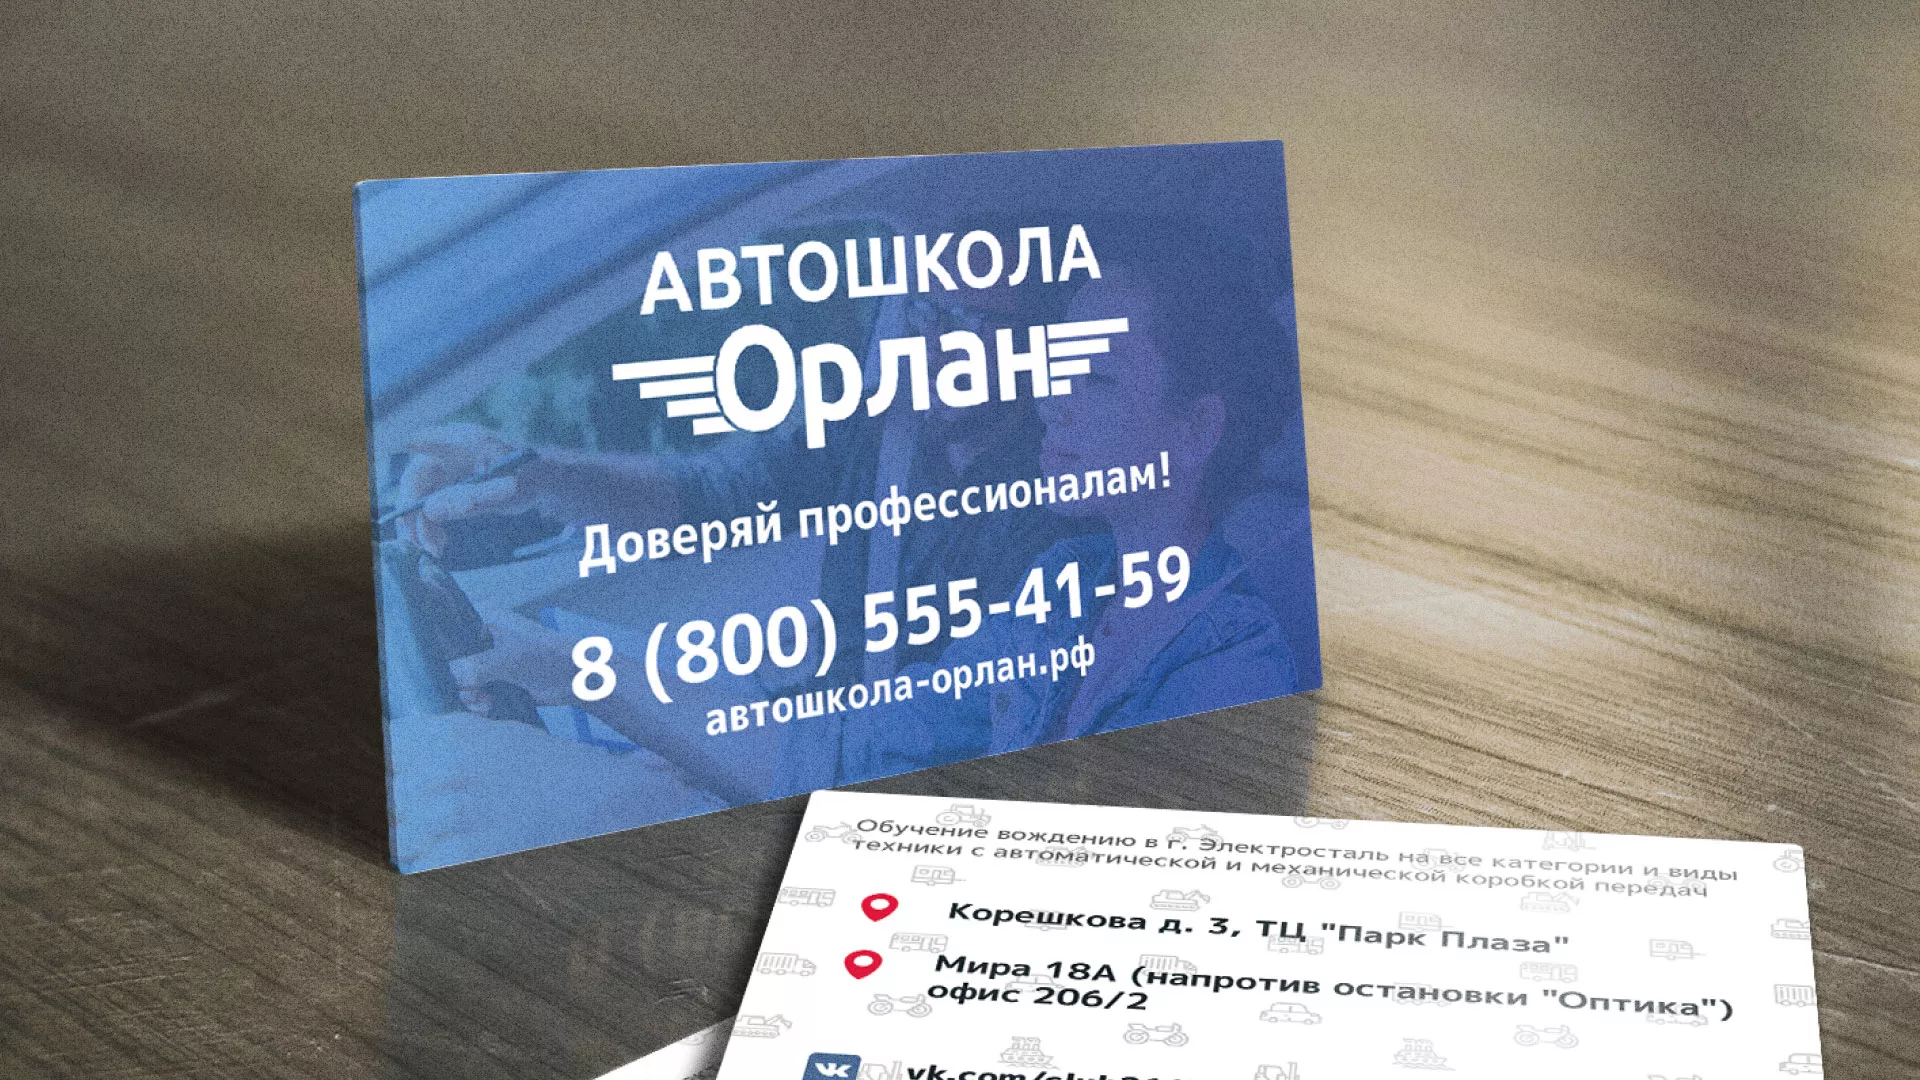 Дизайн рекламных визиток для автошколы «Орлан» в Звенигово